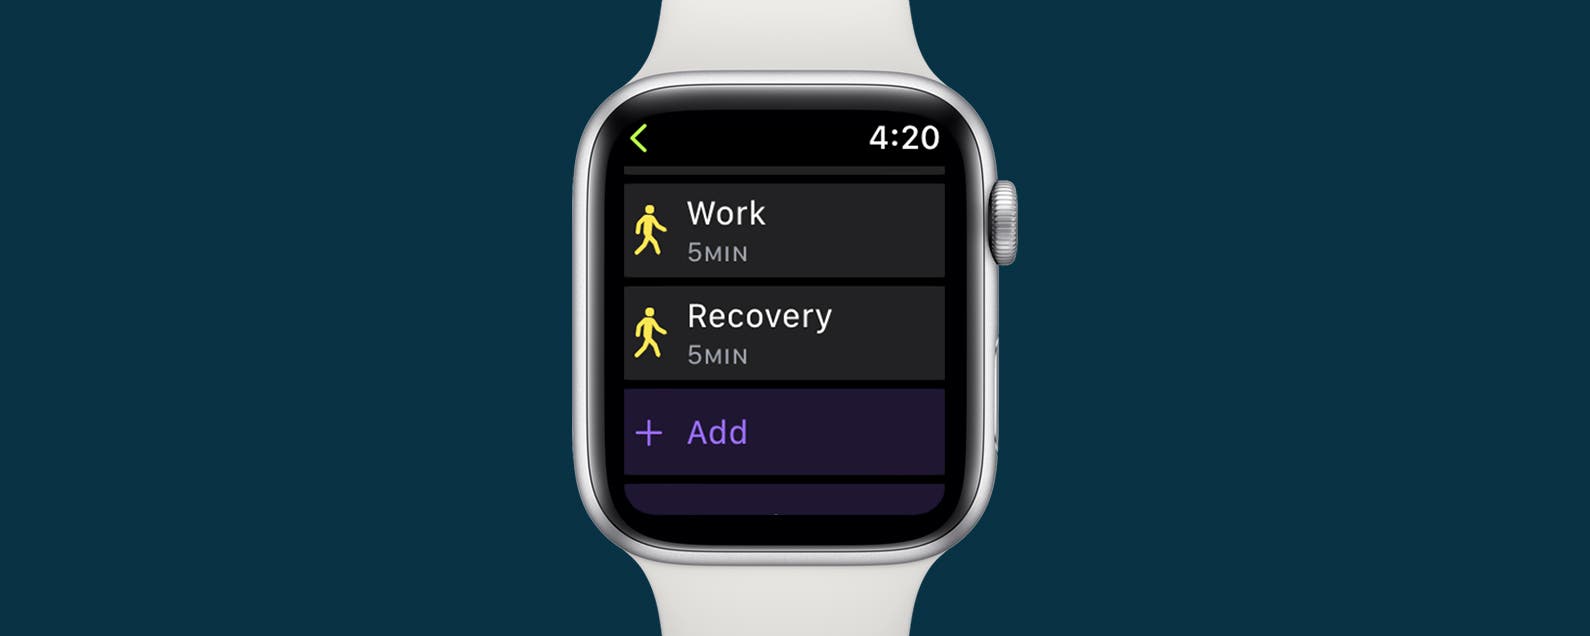 1667286983 Cree un entrenamiento de intervalo personalizado en su Apple Watch